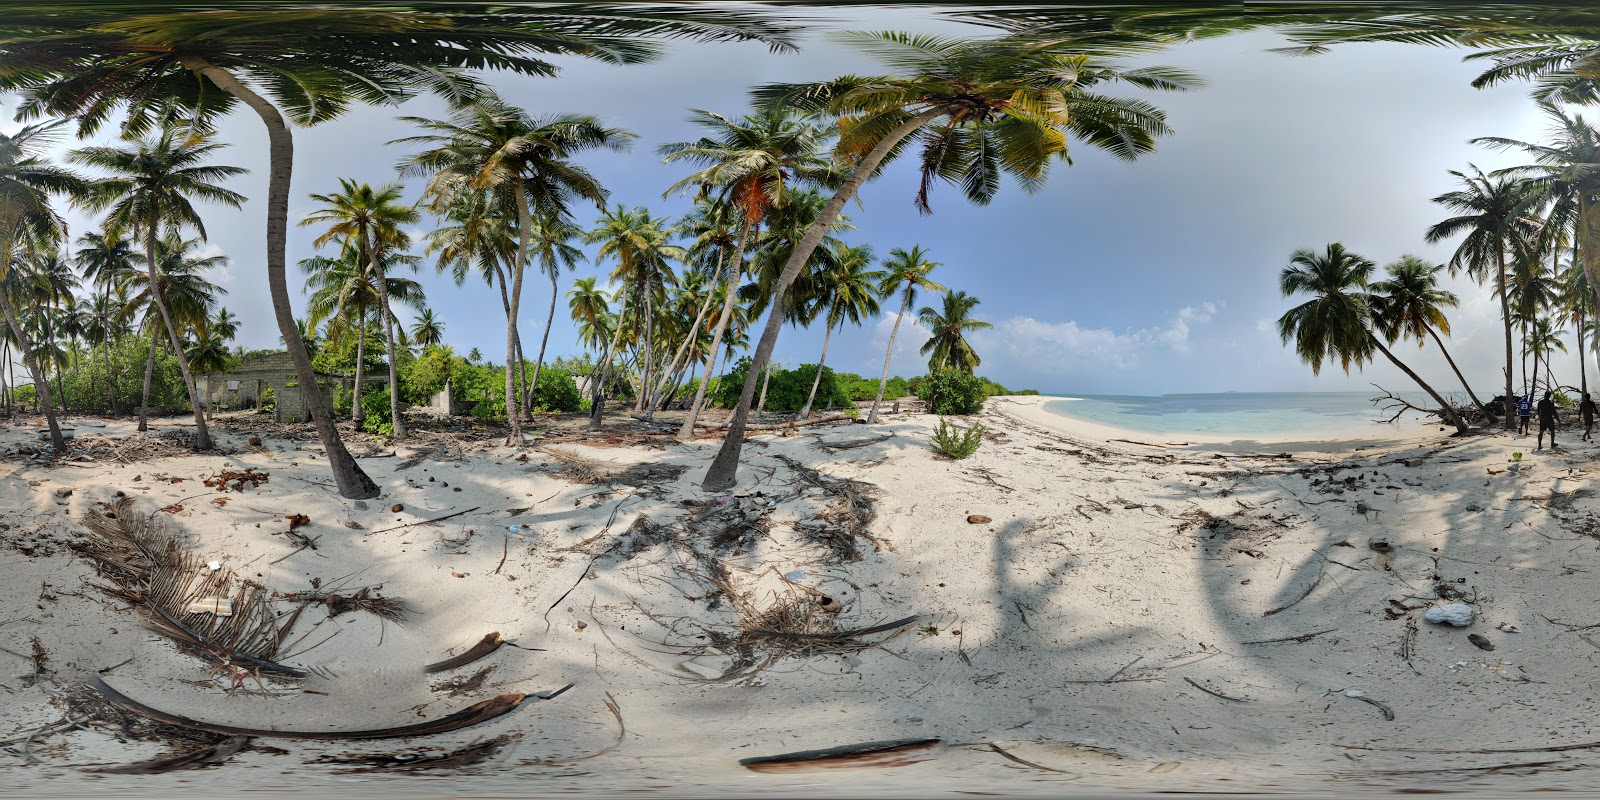 Foto von Hathifushi beach wilde gegend